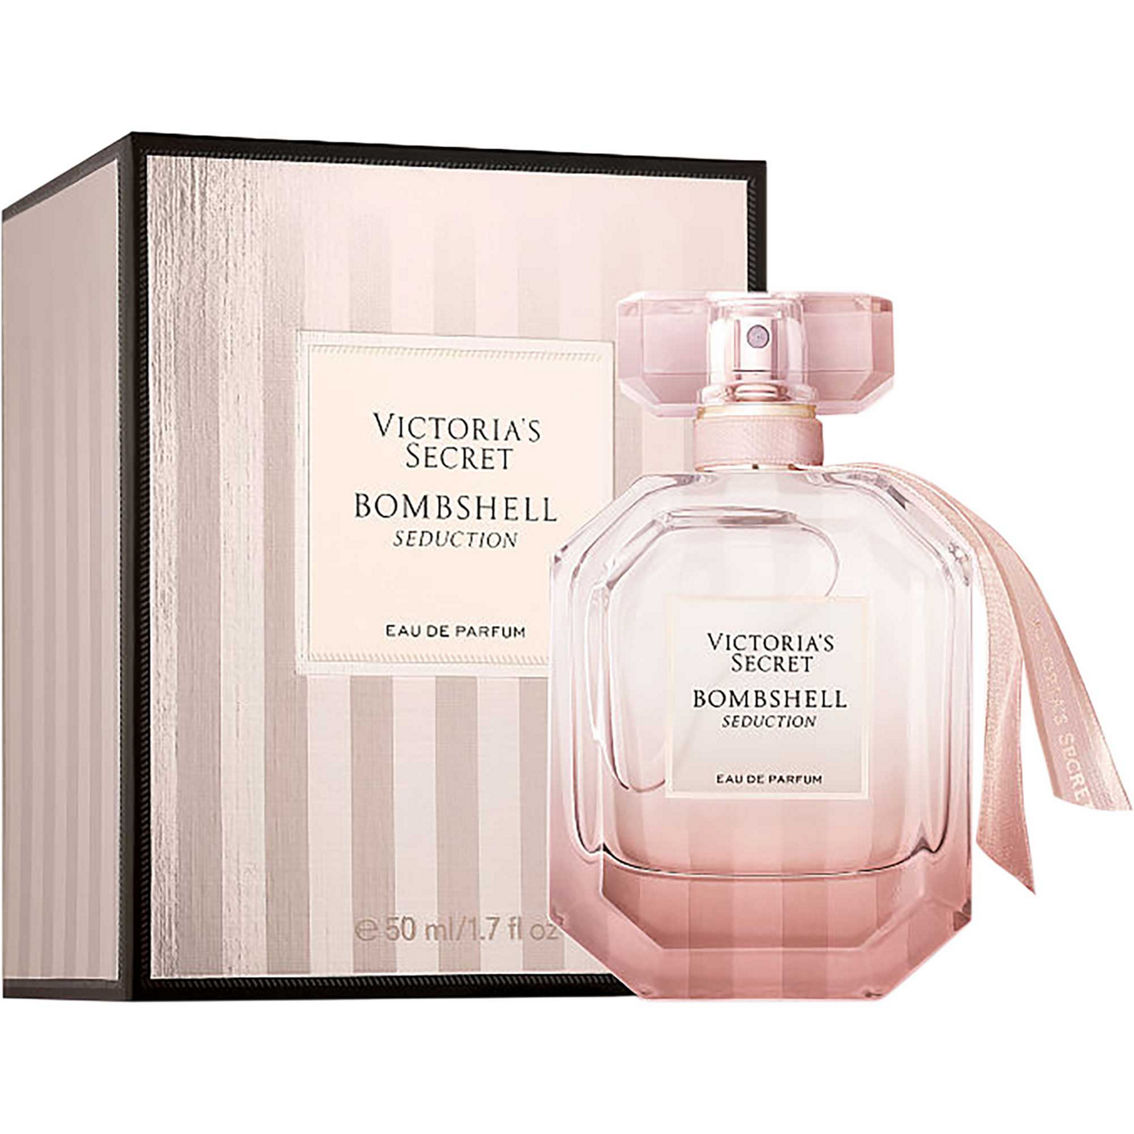 Victoria's Secret Bombshell Seduction Eau de Parfum Spray - Image 2 of 2